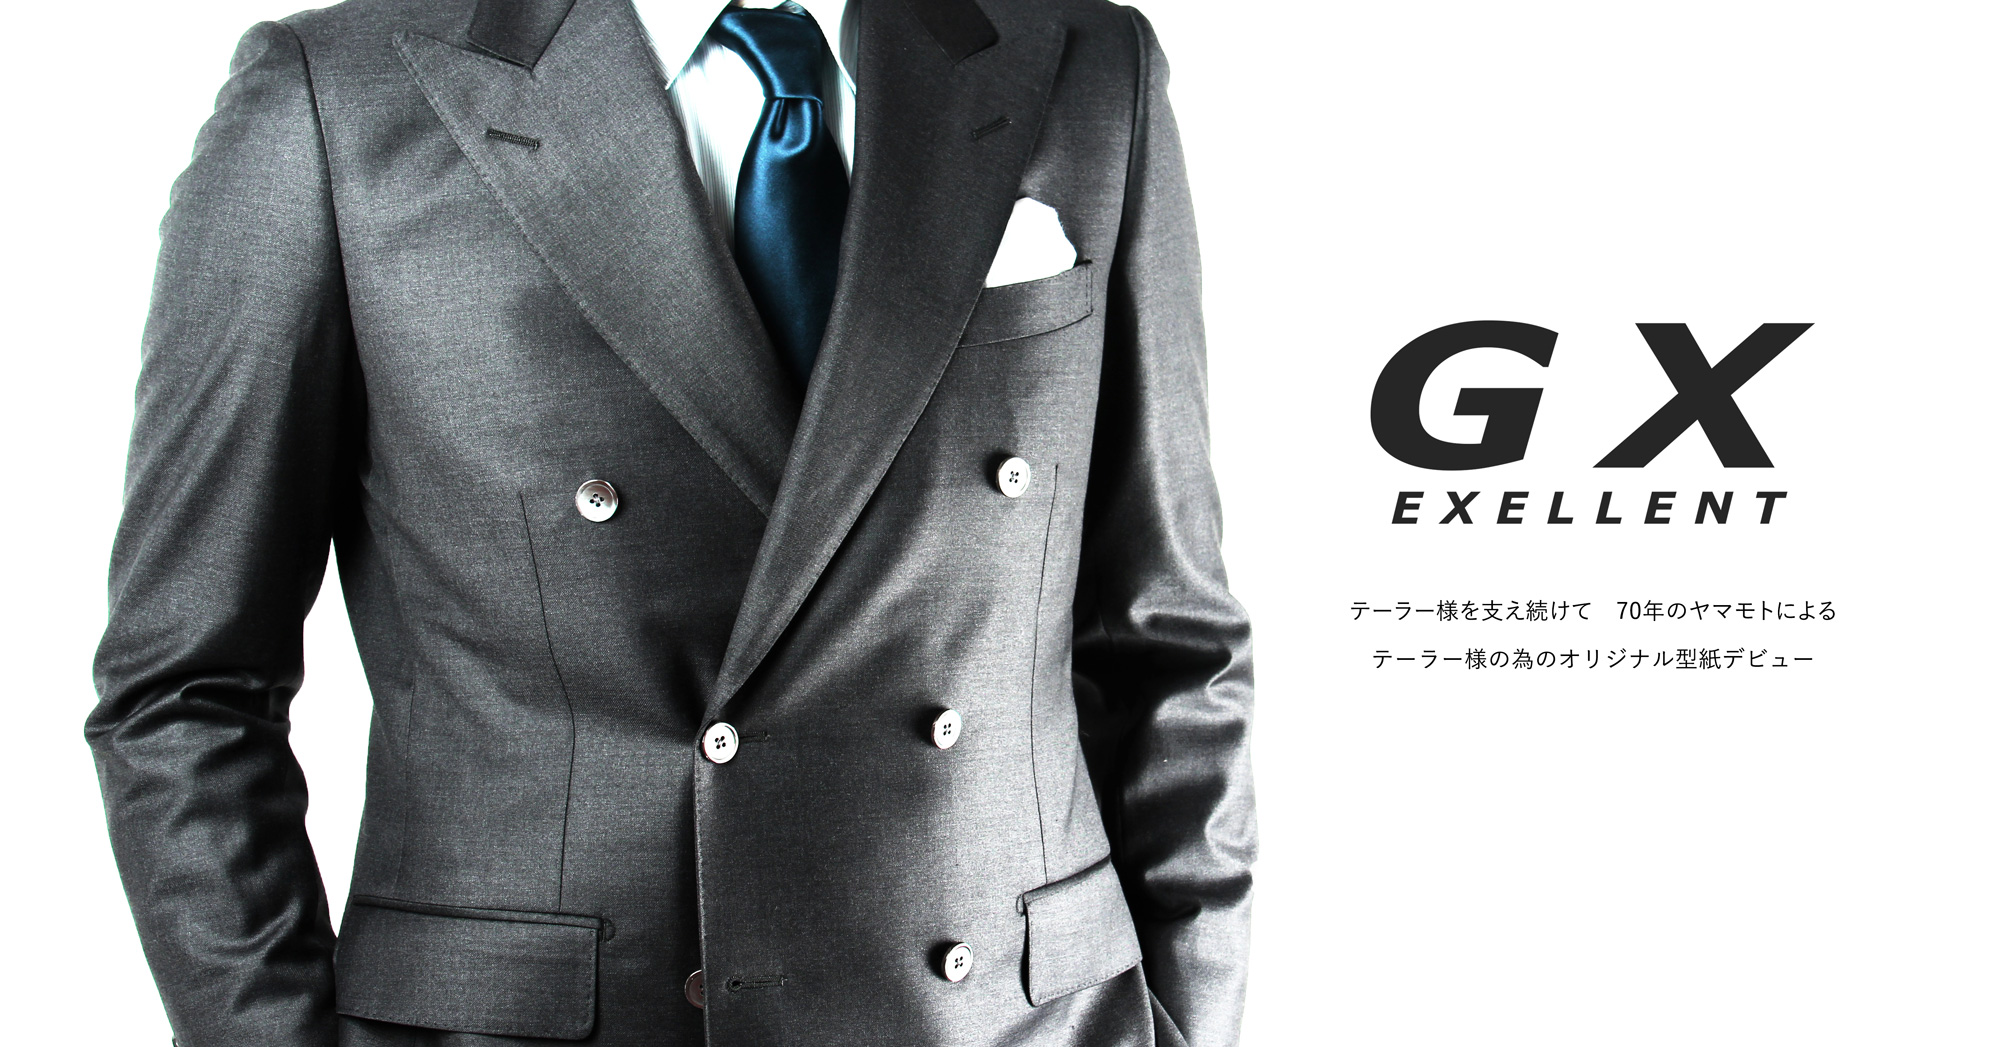 株式会社ヤマモト GX スーツ